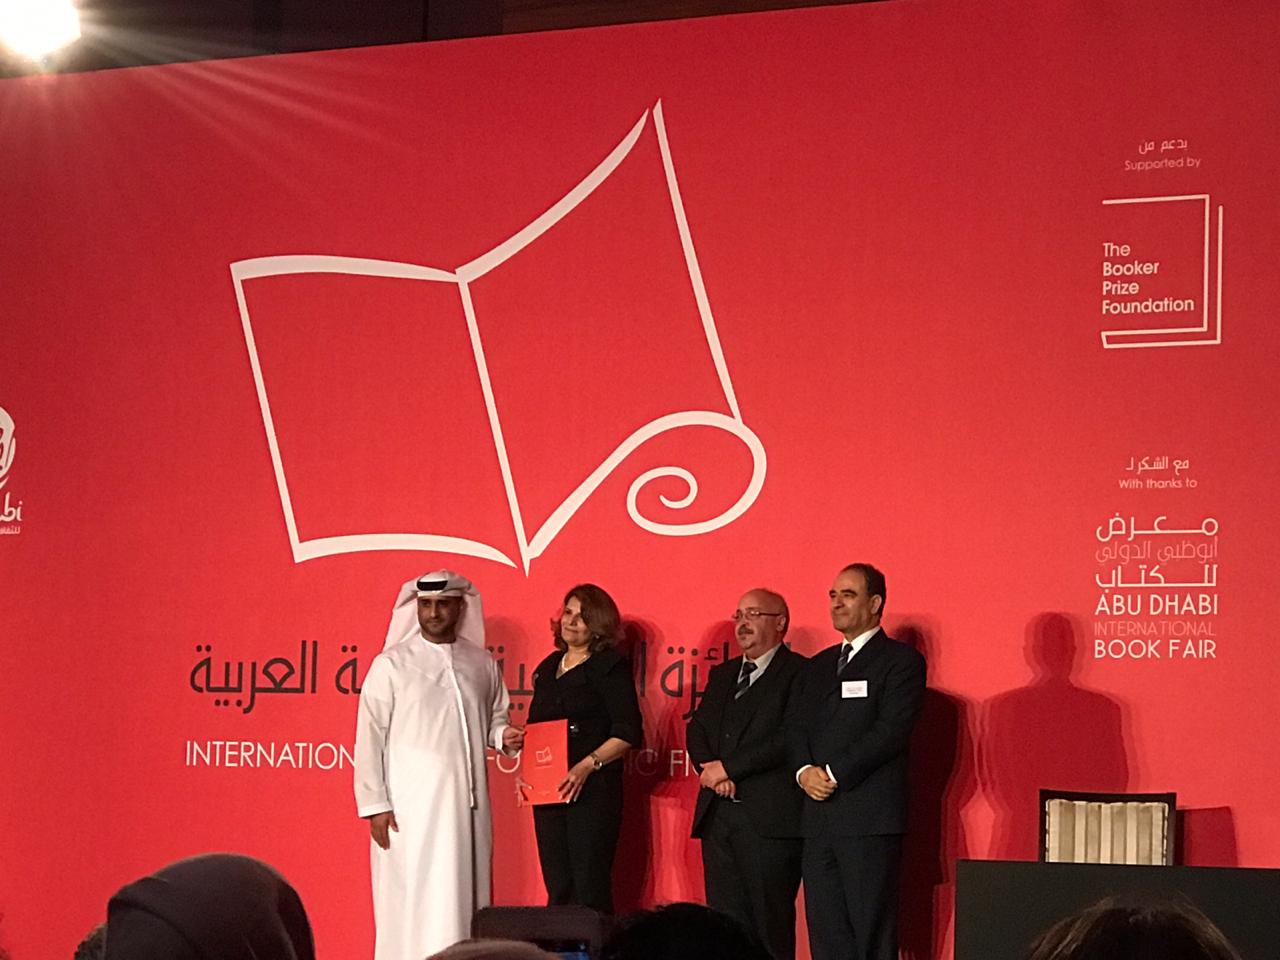 حفل إعلان جائزة البوكر للرواية العربية 2019 (6)